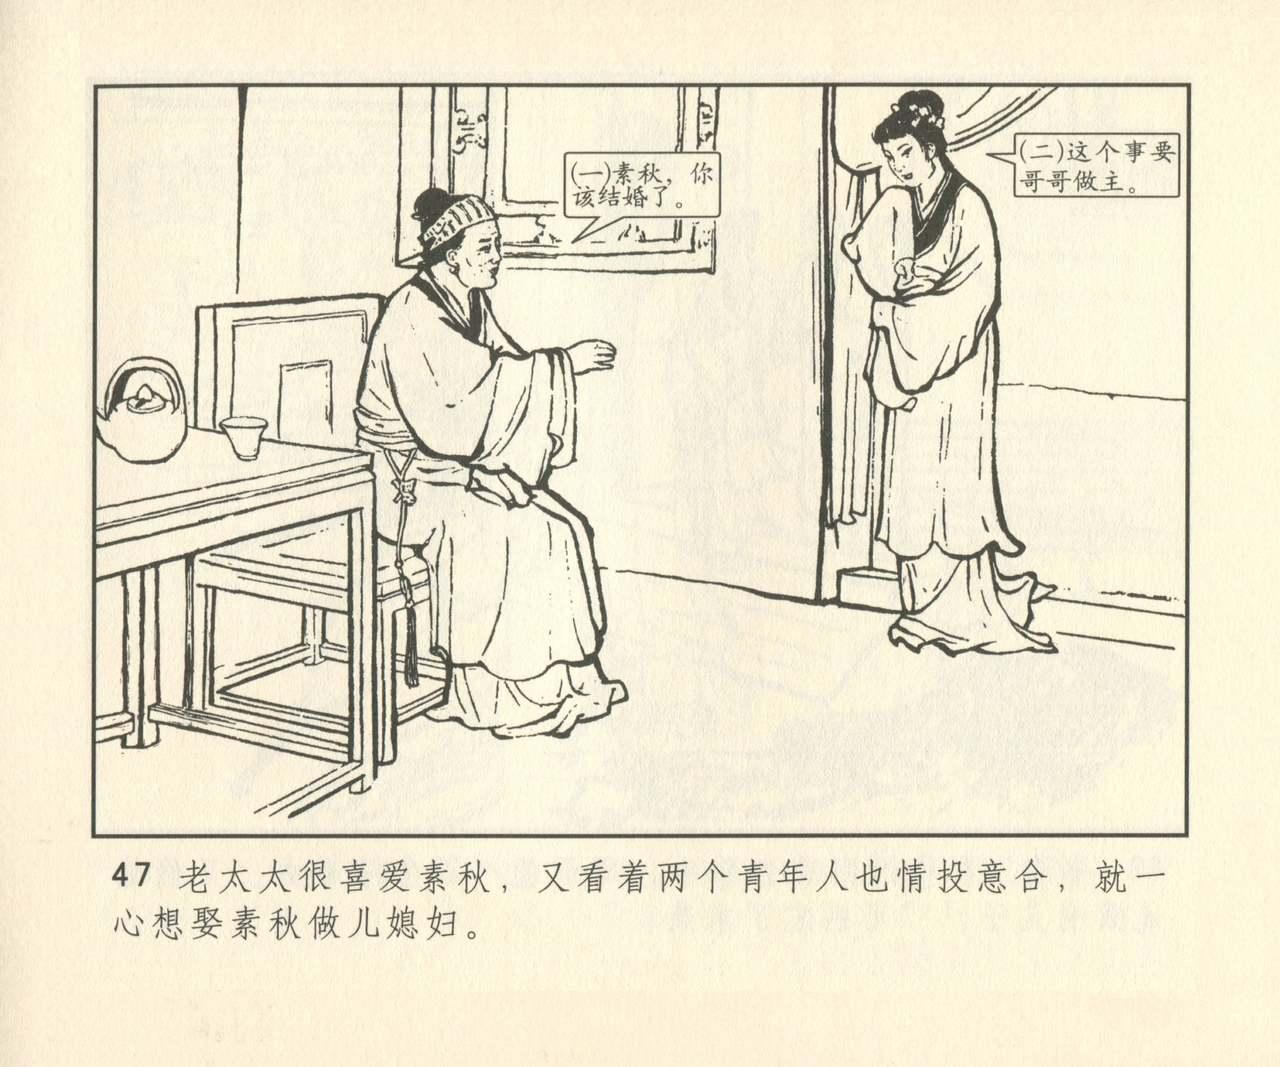 聊斋志异 张玮等绘 天津人民美术出版社 卷二十一 ~ 三十 327